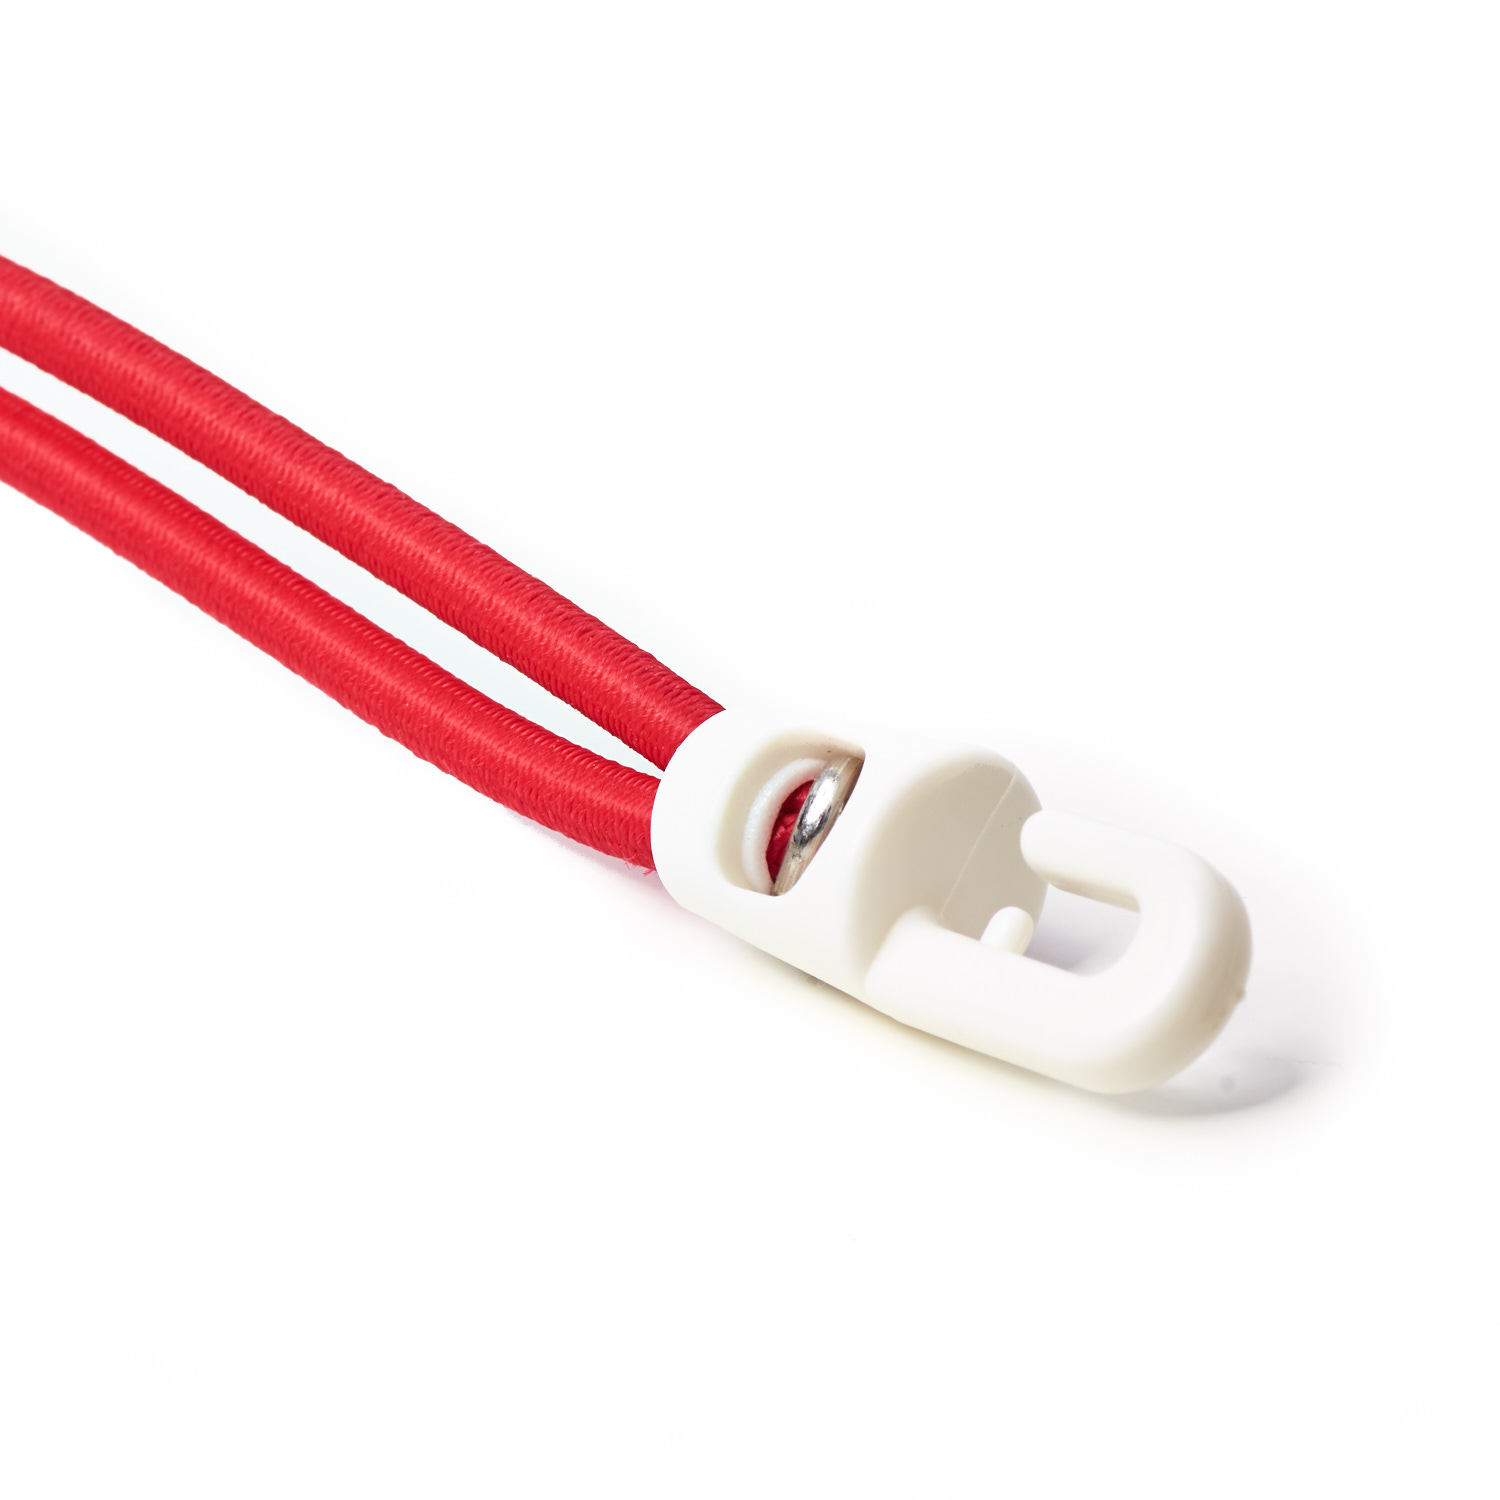 Plastic Hook Ties Tie Down Shock Cord Red Elastic